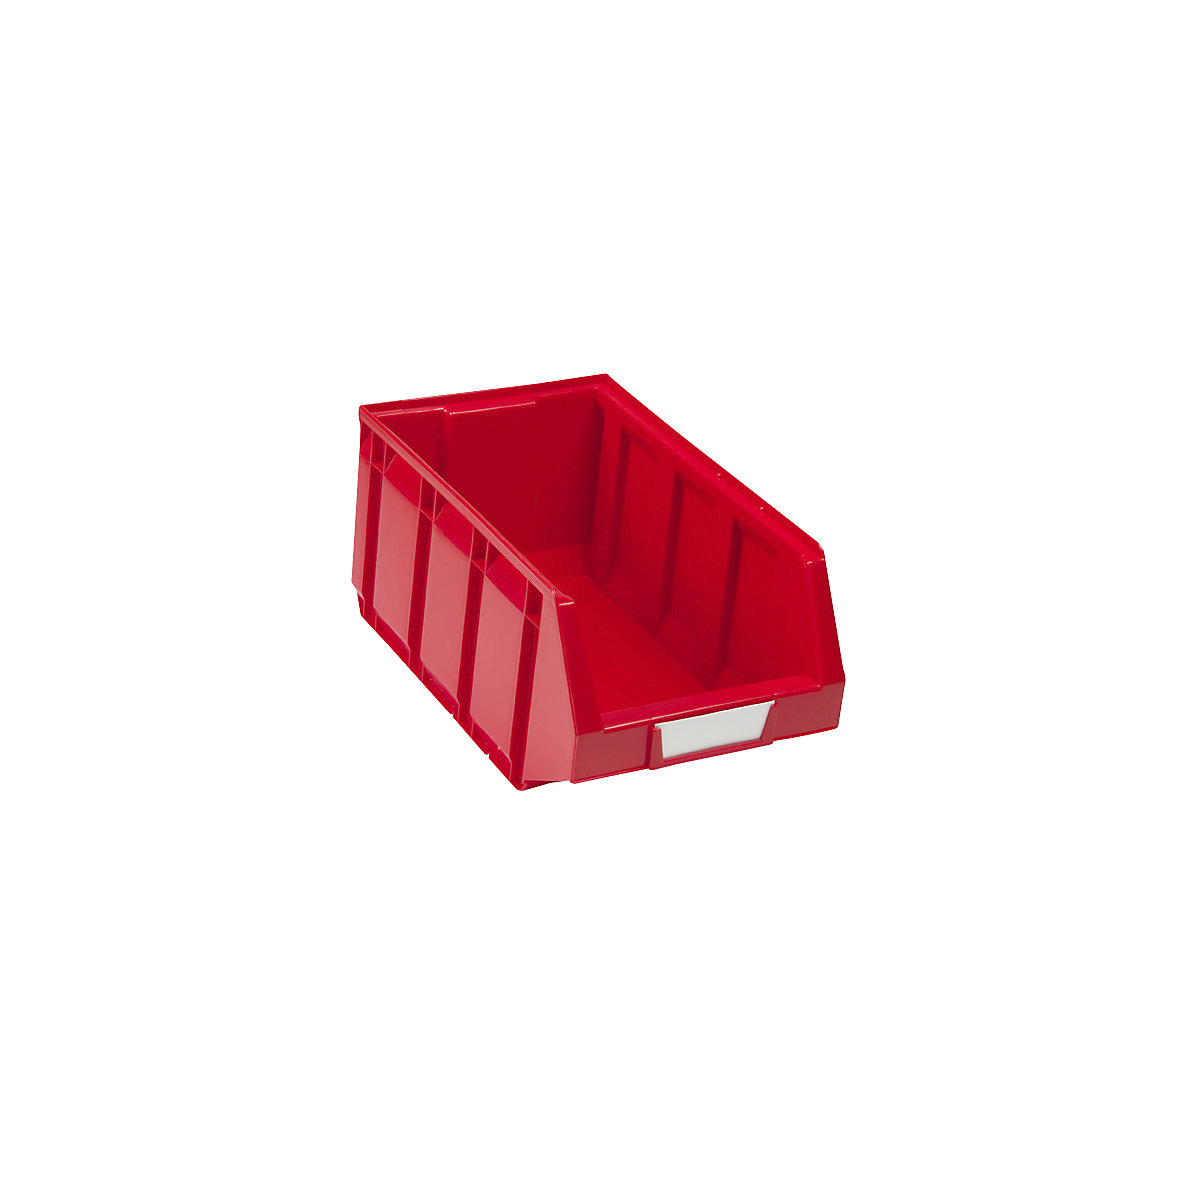 Otwarty pojemnik magazynowy z polietylenu, dł. x szer. x wys. 345 x 205 x 164 mm, czerwony, opak. 24 szt.-10